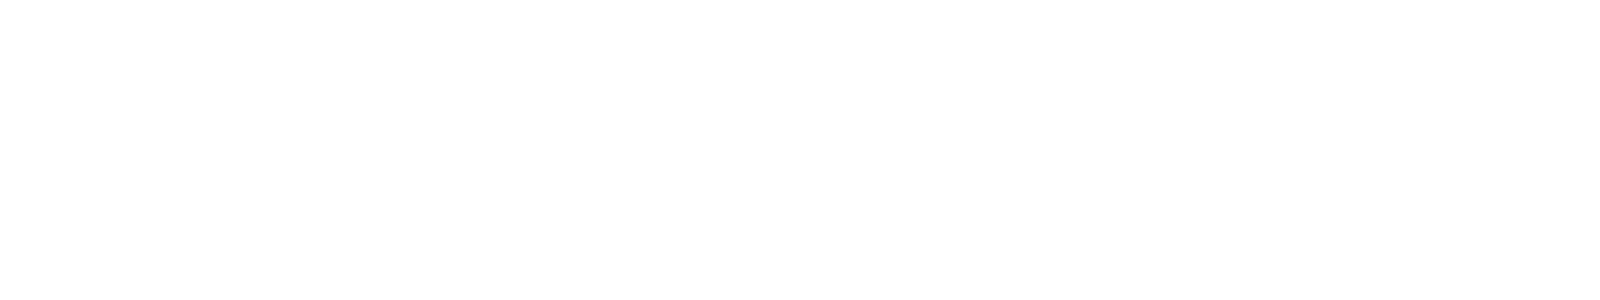 s7law logo biale2 - Kujawsko-Pomorskie